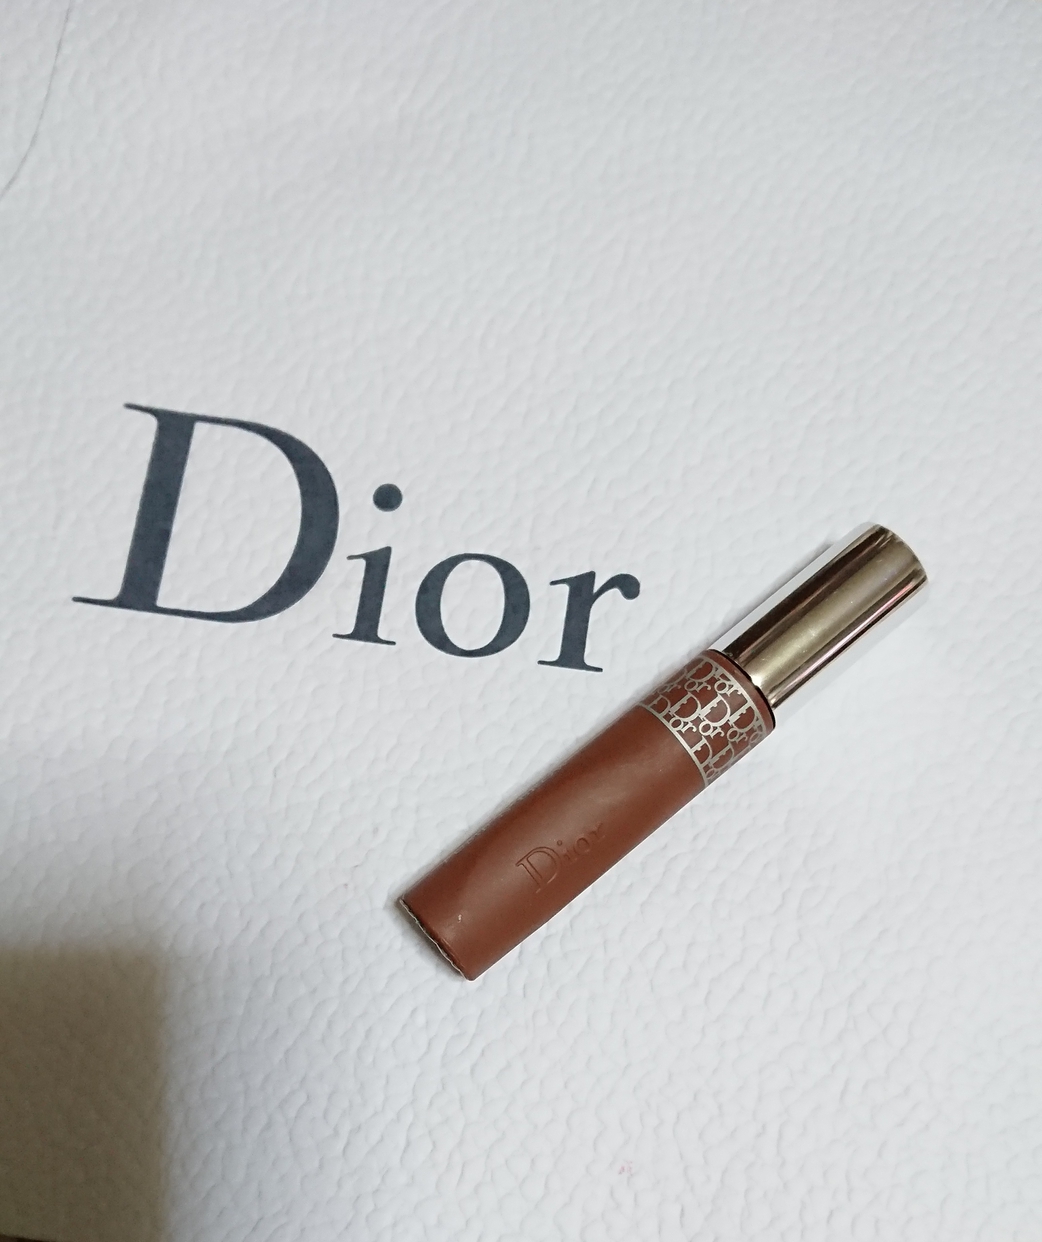 Dior(ディオール) ショウ パンプ&ブロウに関するErikaさんの口コミ画像1